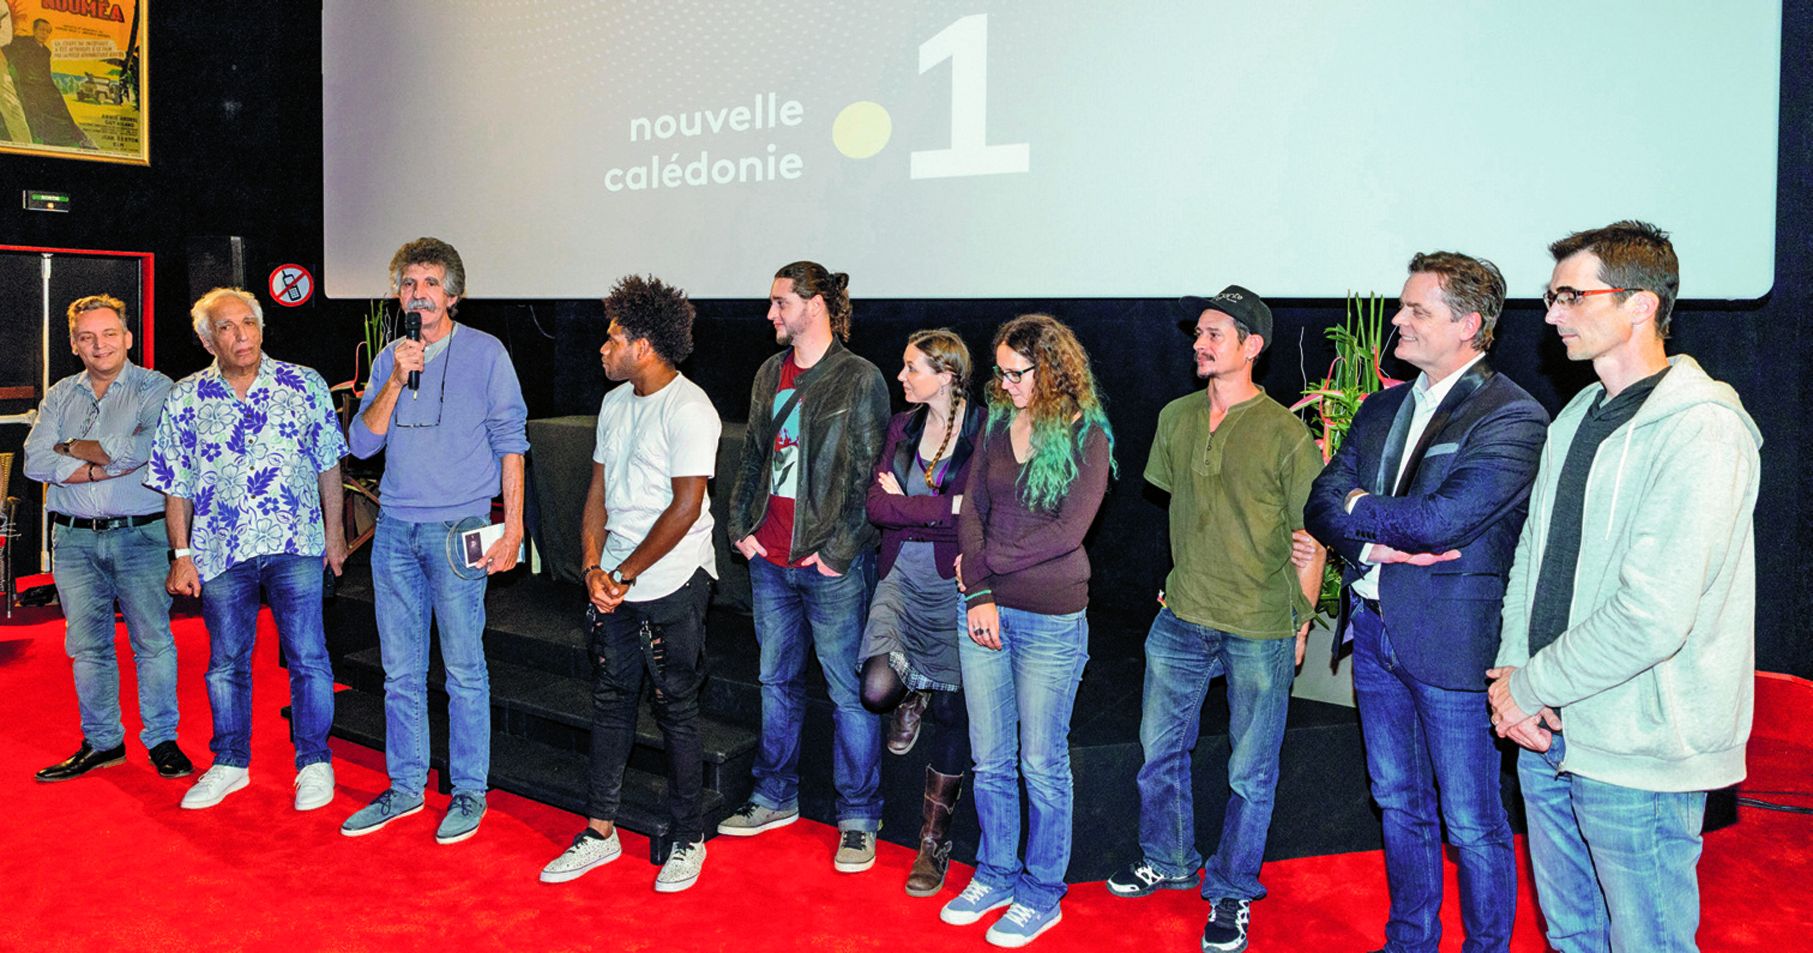 L’année dernière, le jury présidé par Gérard Darmon avait décerné le prix  NC la 1re au film Blessures, de Roland Rossero. Photo Marc Le Chélard